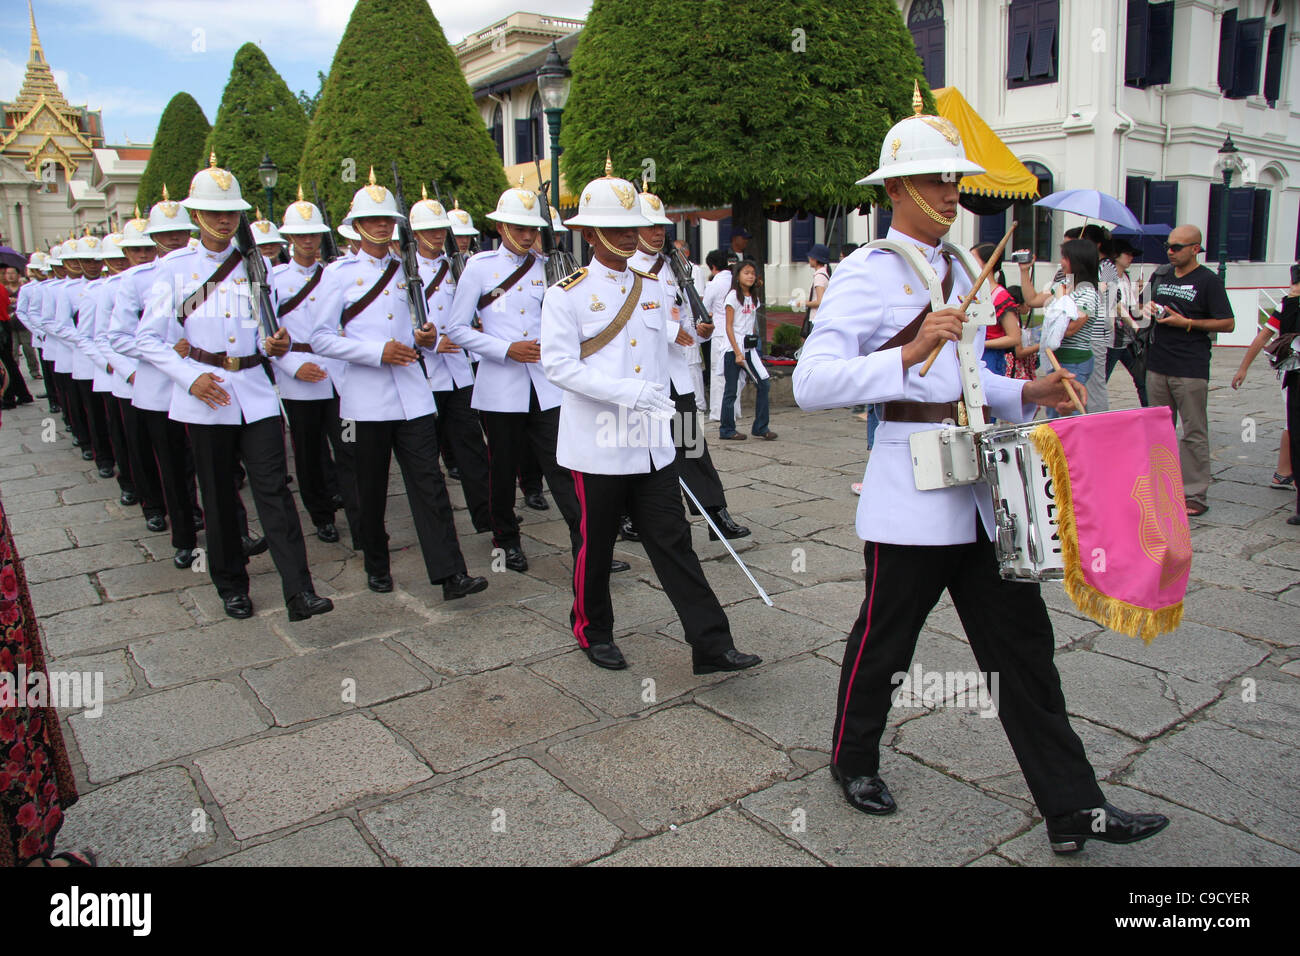 Palace Guards marching at the Grand Palace, Bangkok Stock Photo